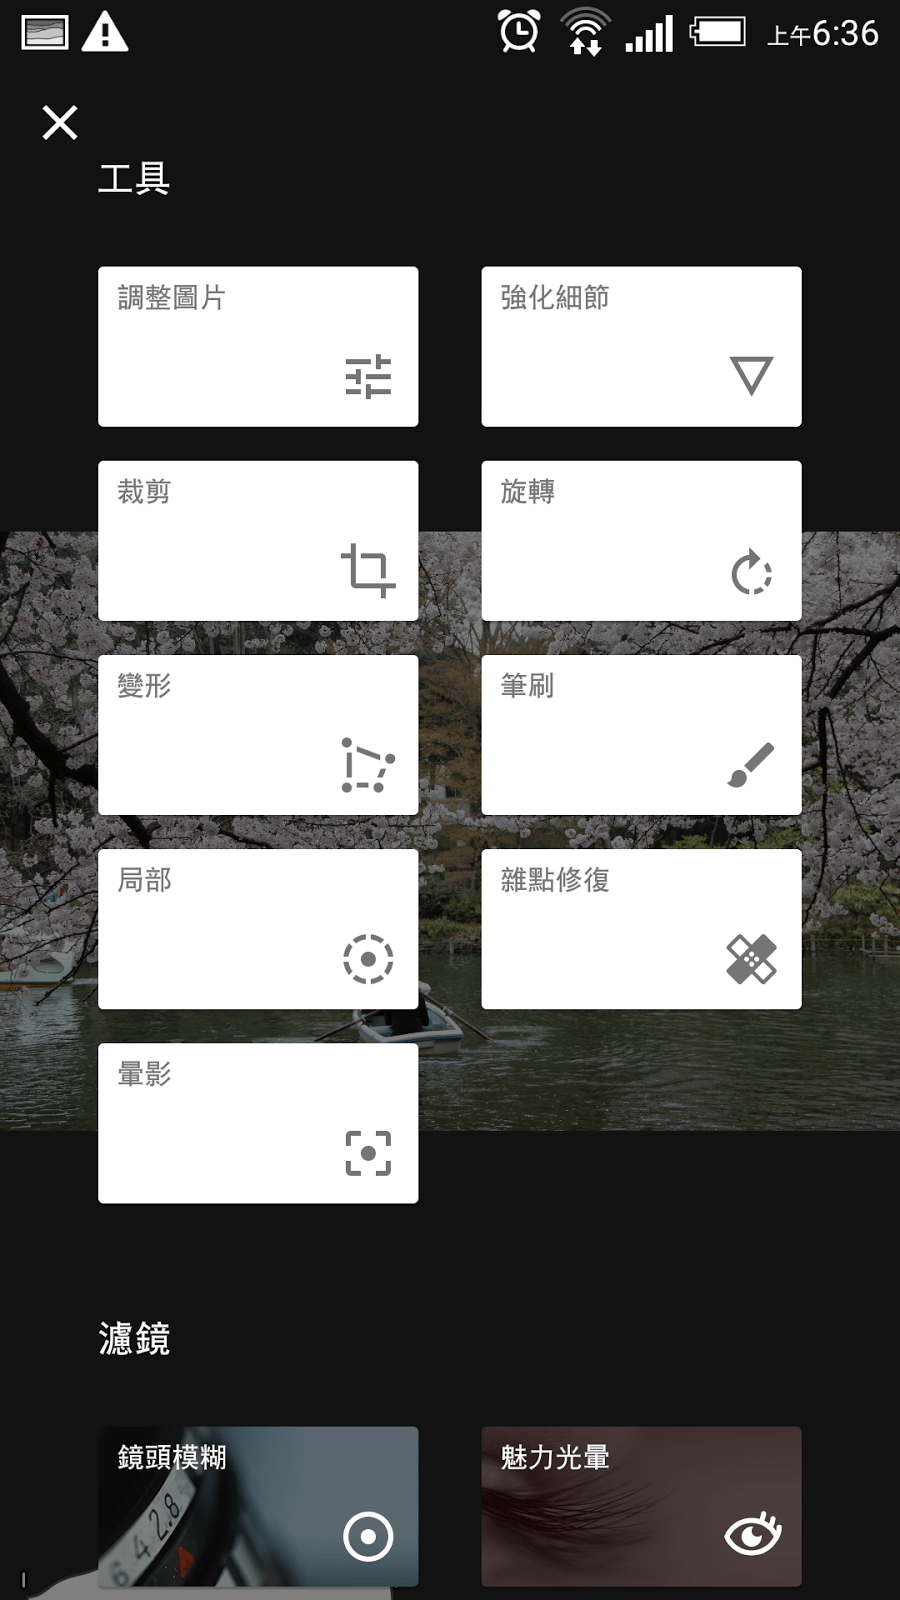 8款修图app推荐 手机影相必备  执相美图滤镜网红都用